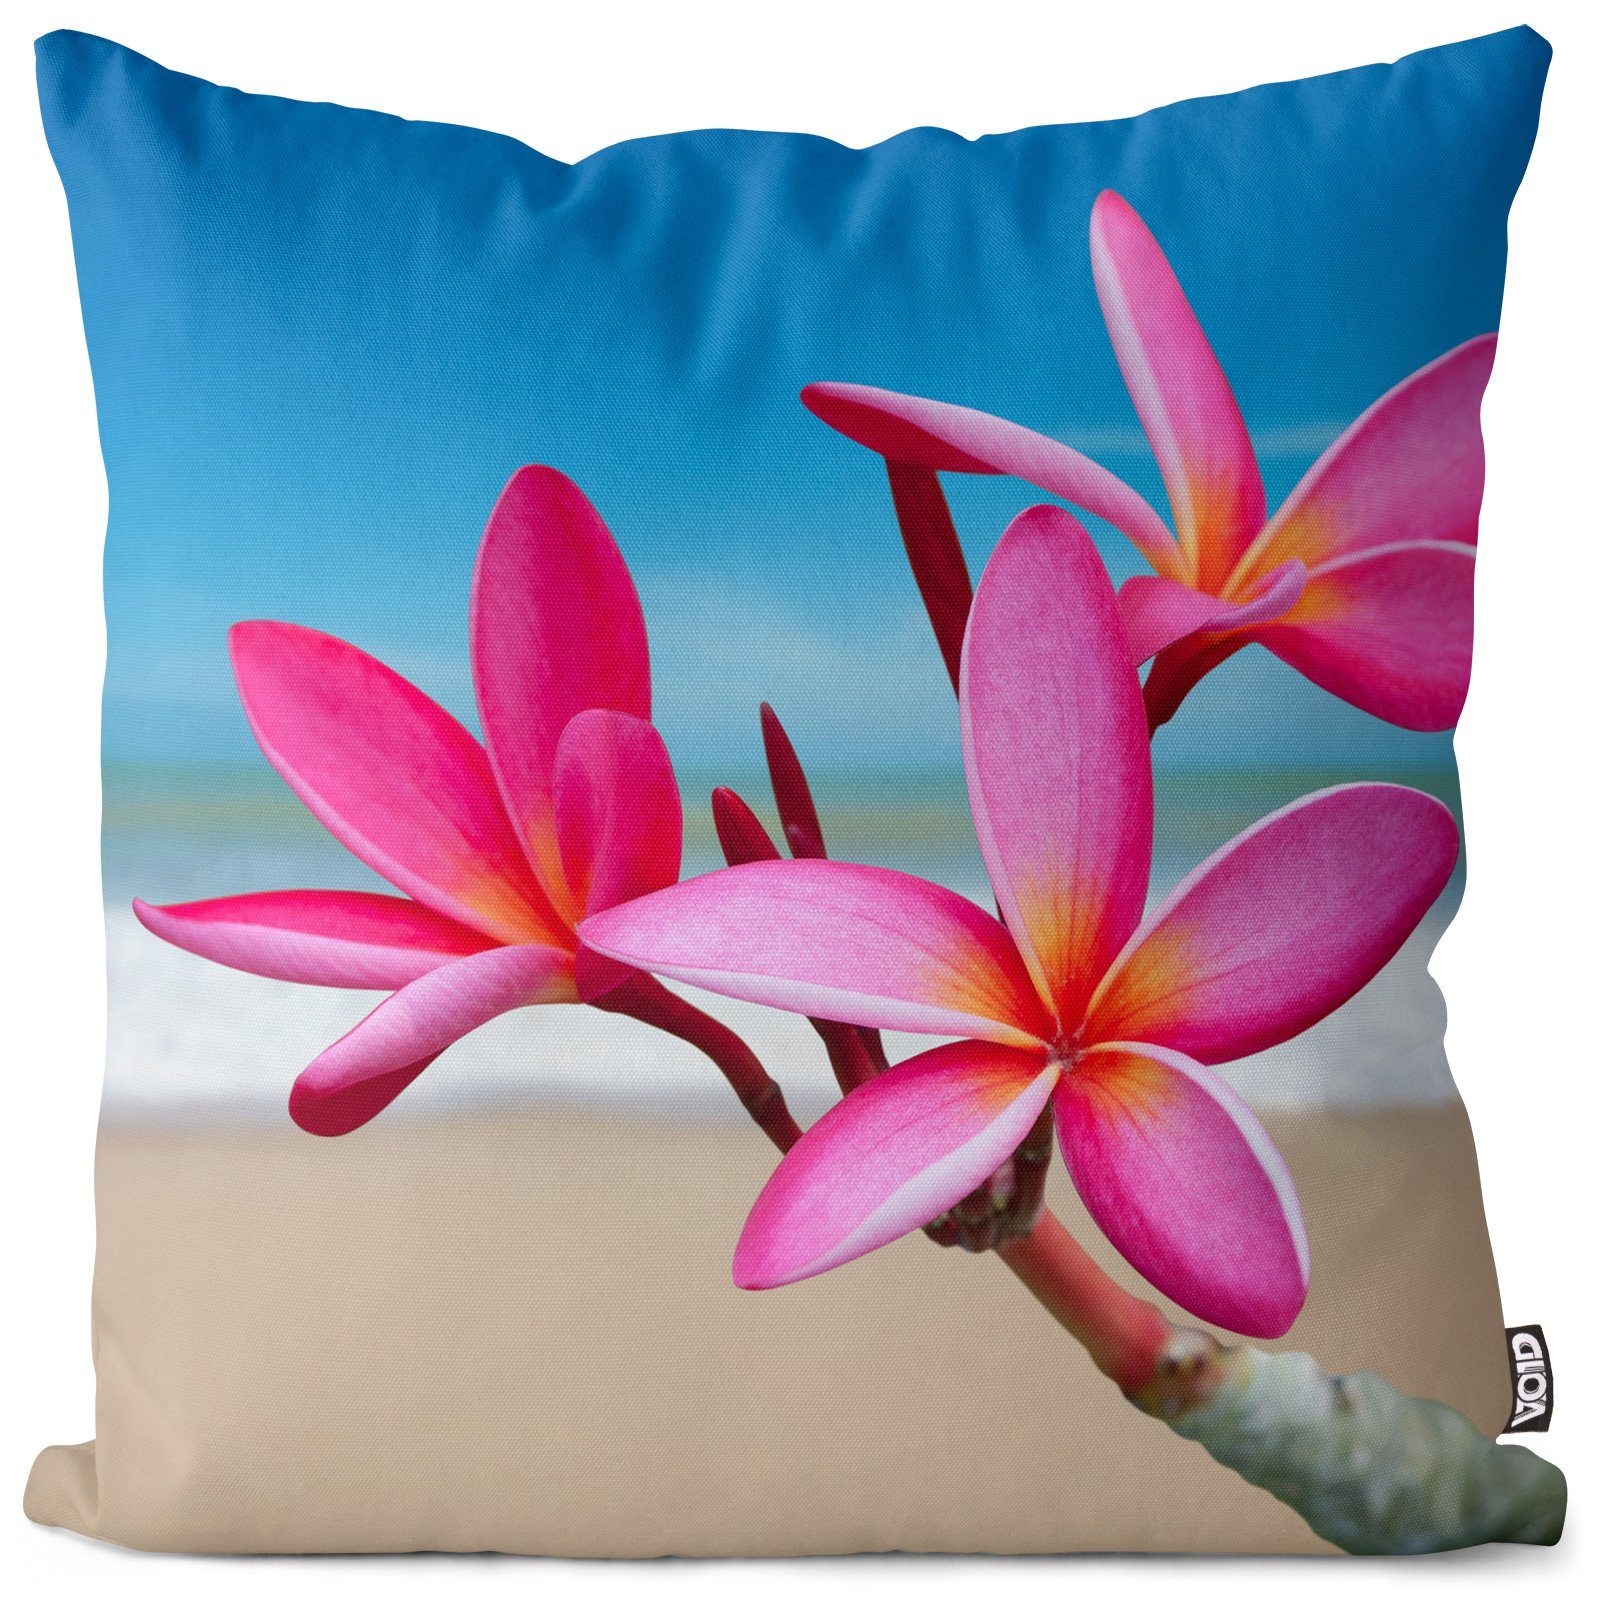 Kissenbezug, VOID (1 Stück), Hawaiiblume Blume Strand Hawaii plumeria asien bali schön-heit exotis